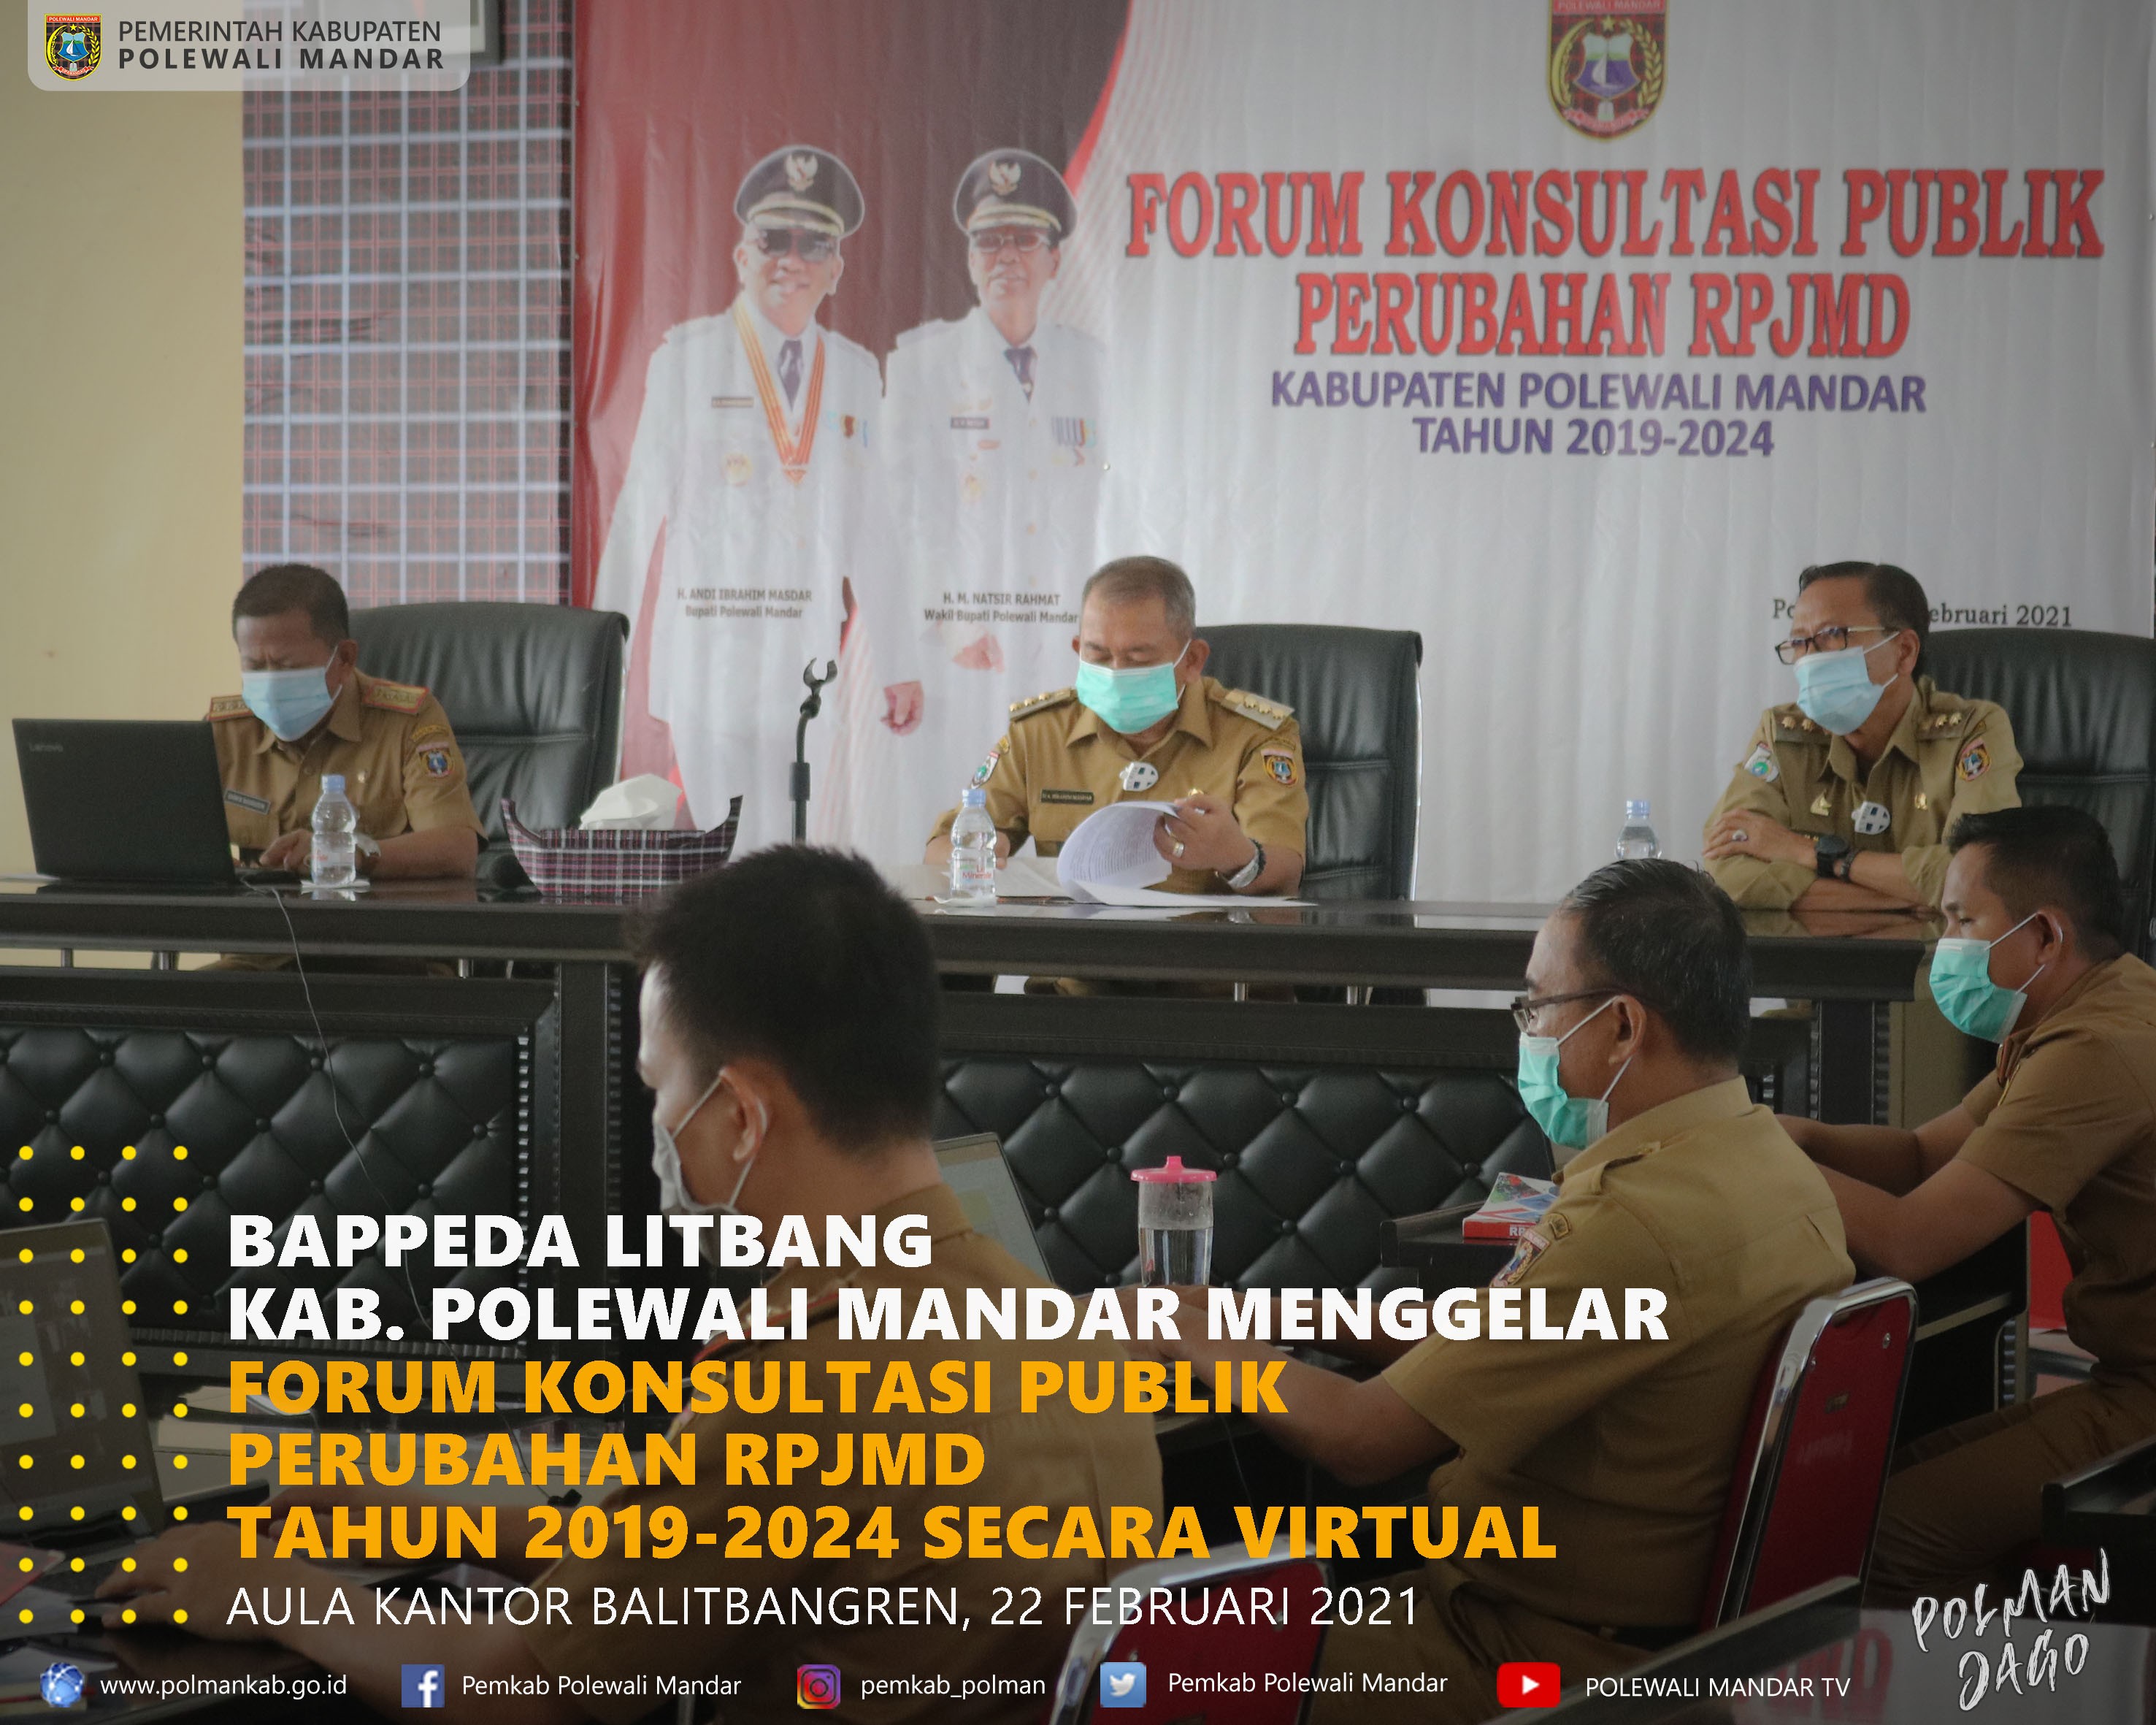 Bappeda Litbang Gelar Forum Konsultasi Publik Perubahan RPJMD Tahun 2019-2024